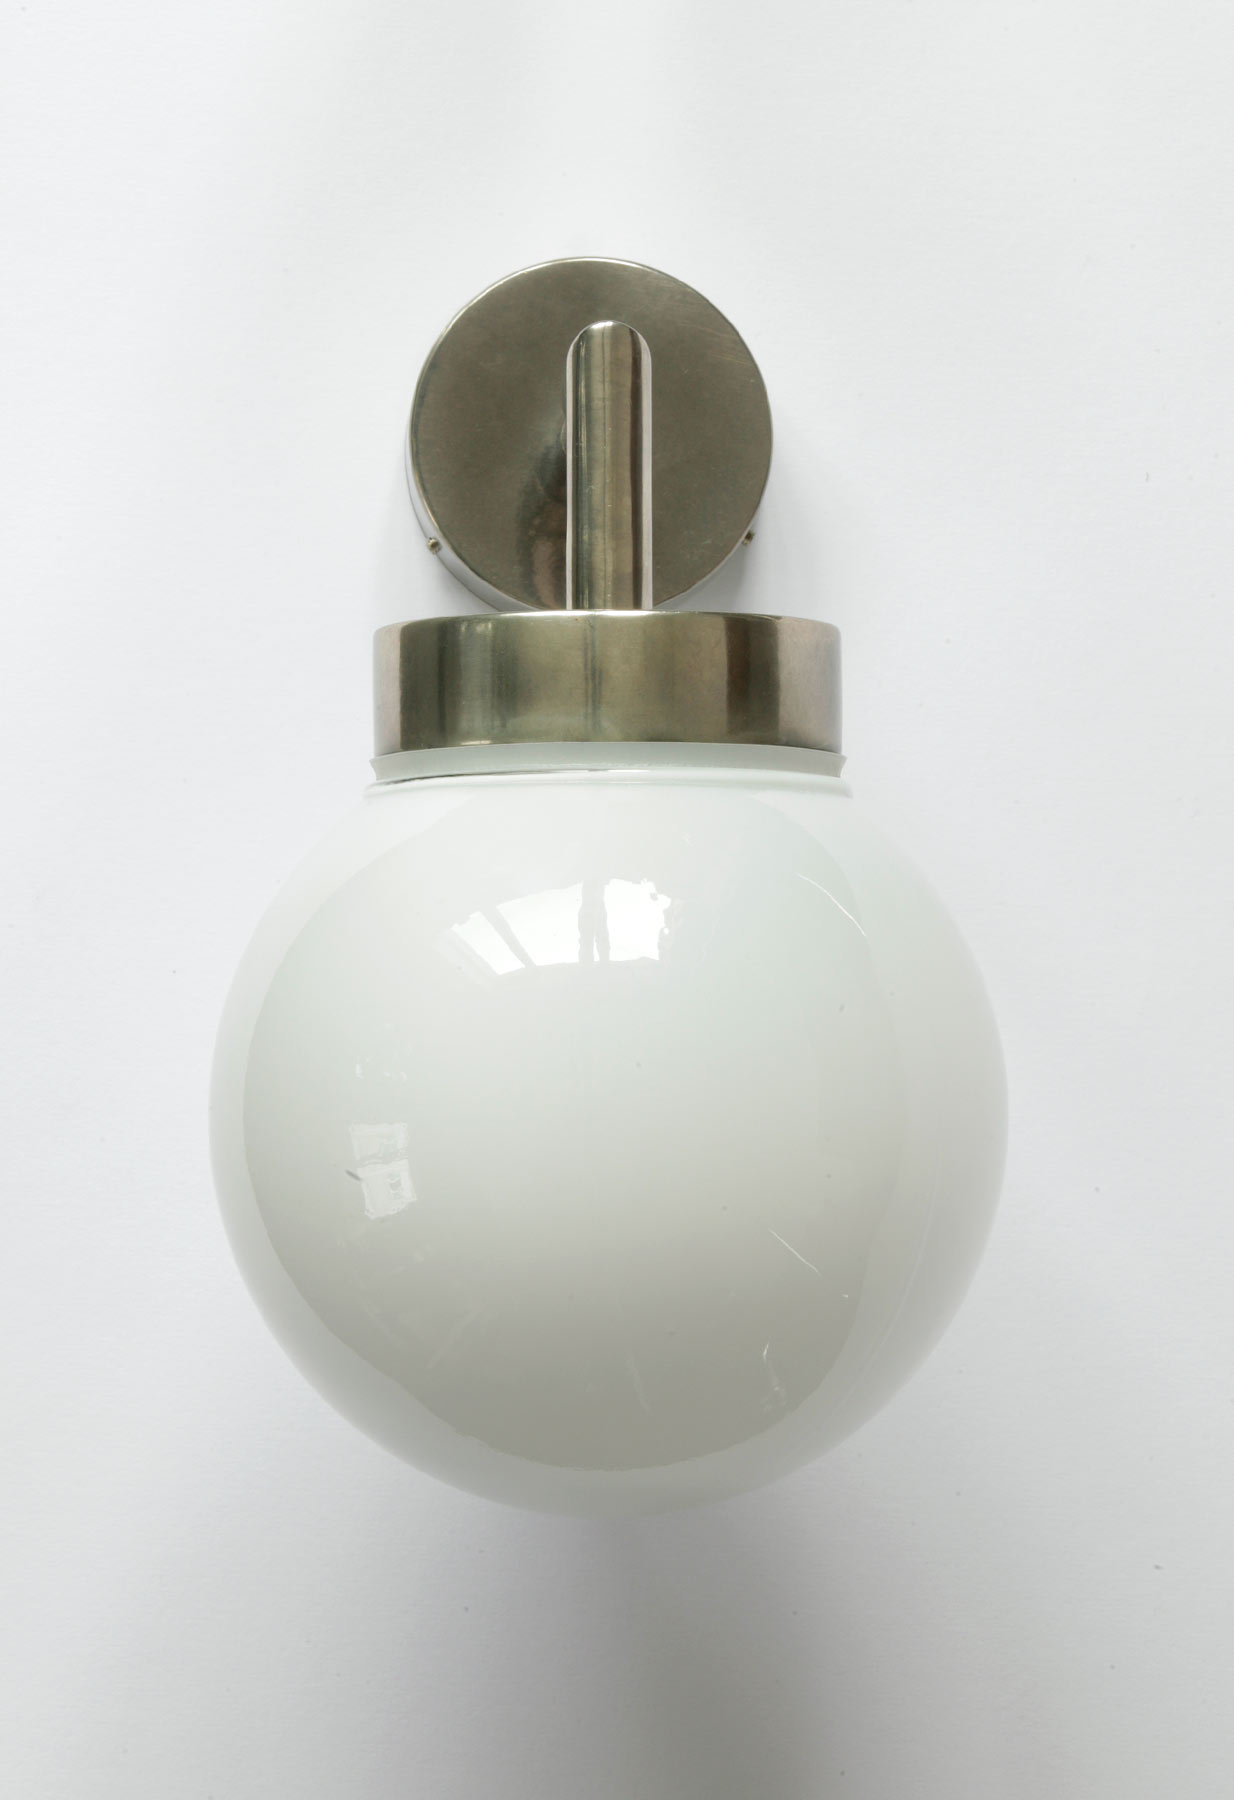 Kleine Kugel-Wandlampe, dank IP65 auch fürs Bad, Ø 15 cm: Kleine Kugel-Wandlampe (wasserdicht), hier alt-silbern patiniert, opales Glas